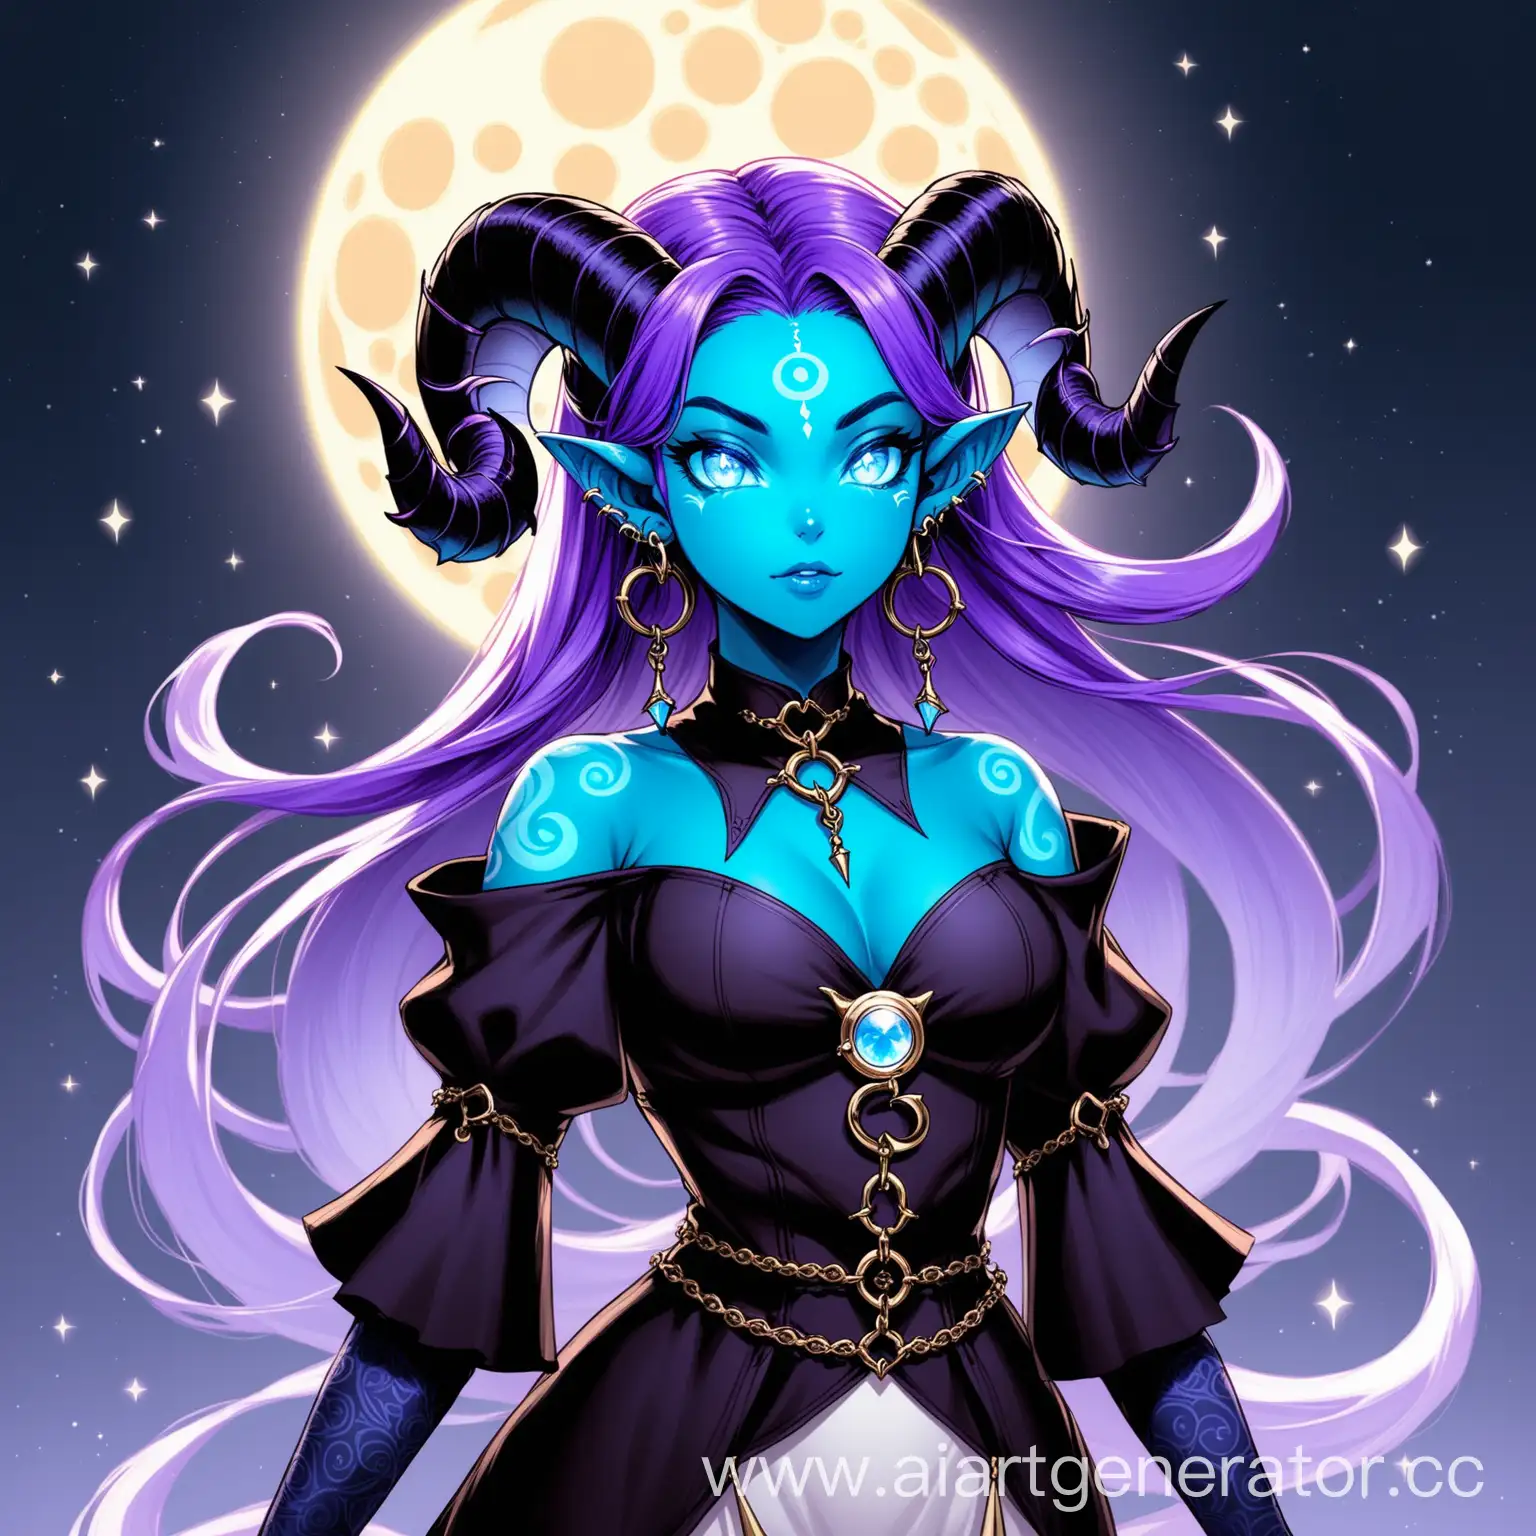 Tiefling girl, inventor, purple hair, swirling black horns, moon earrings, blue skin, white eyes, silver jewelry